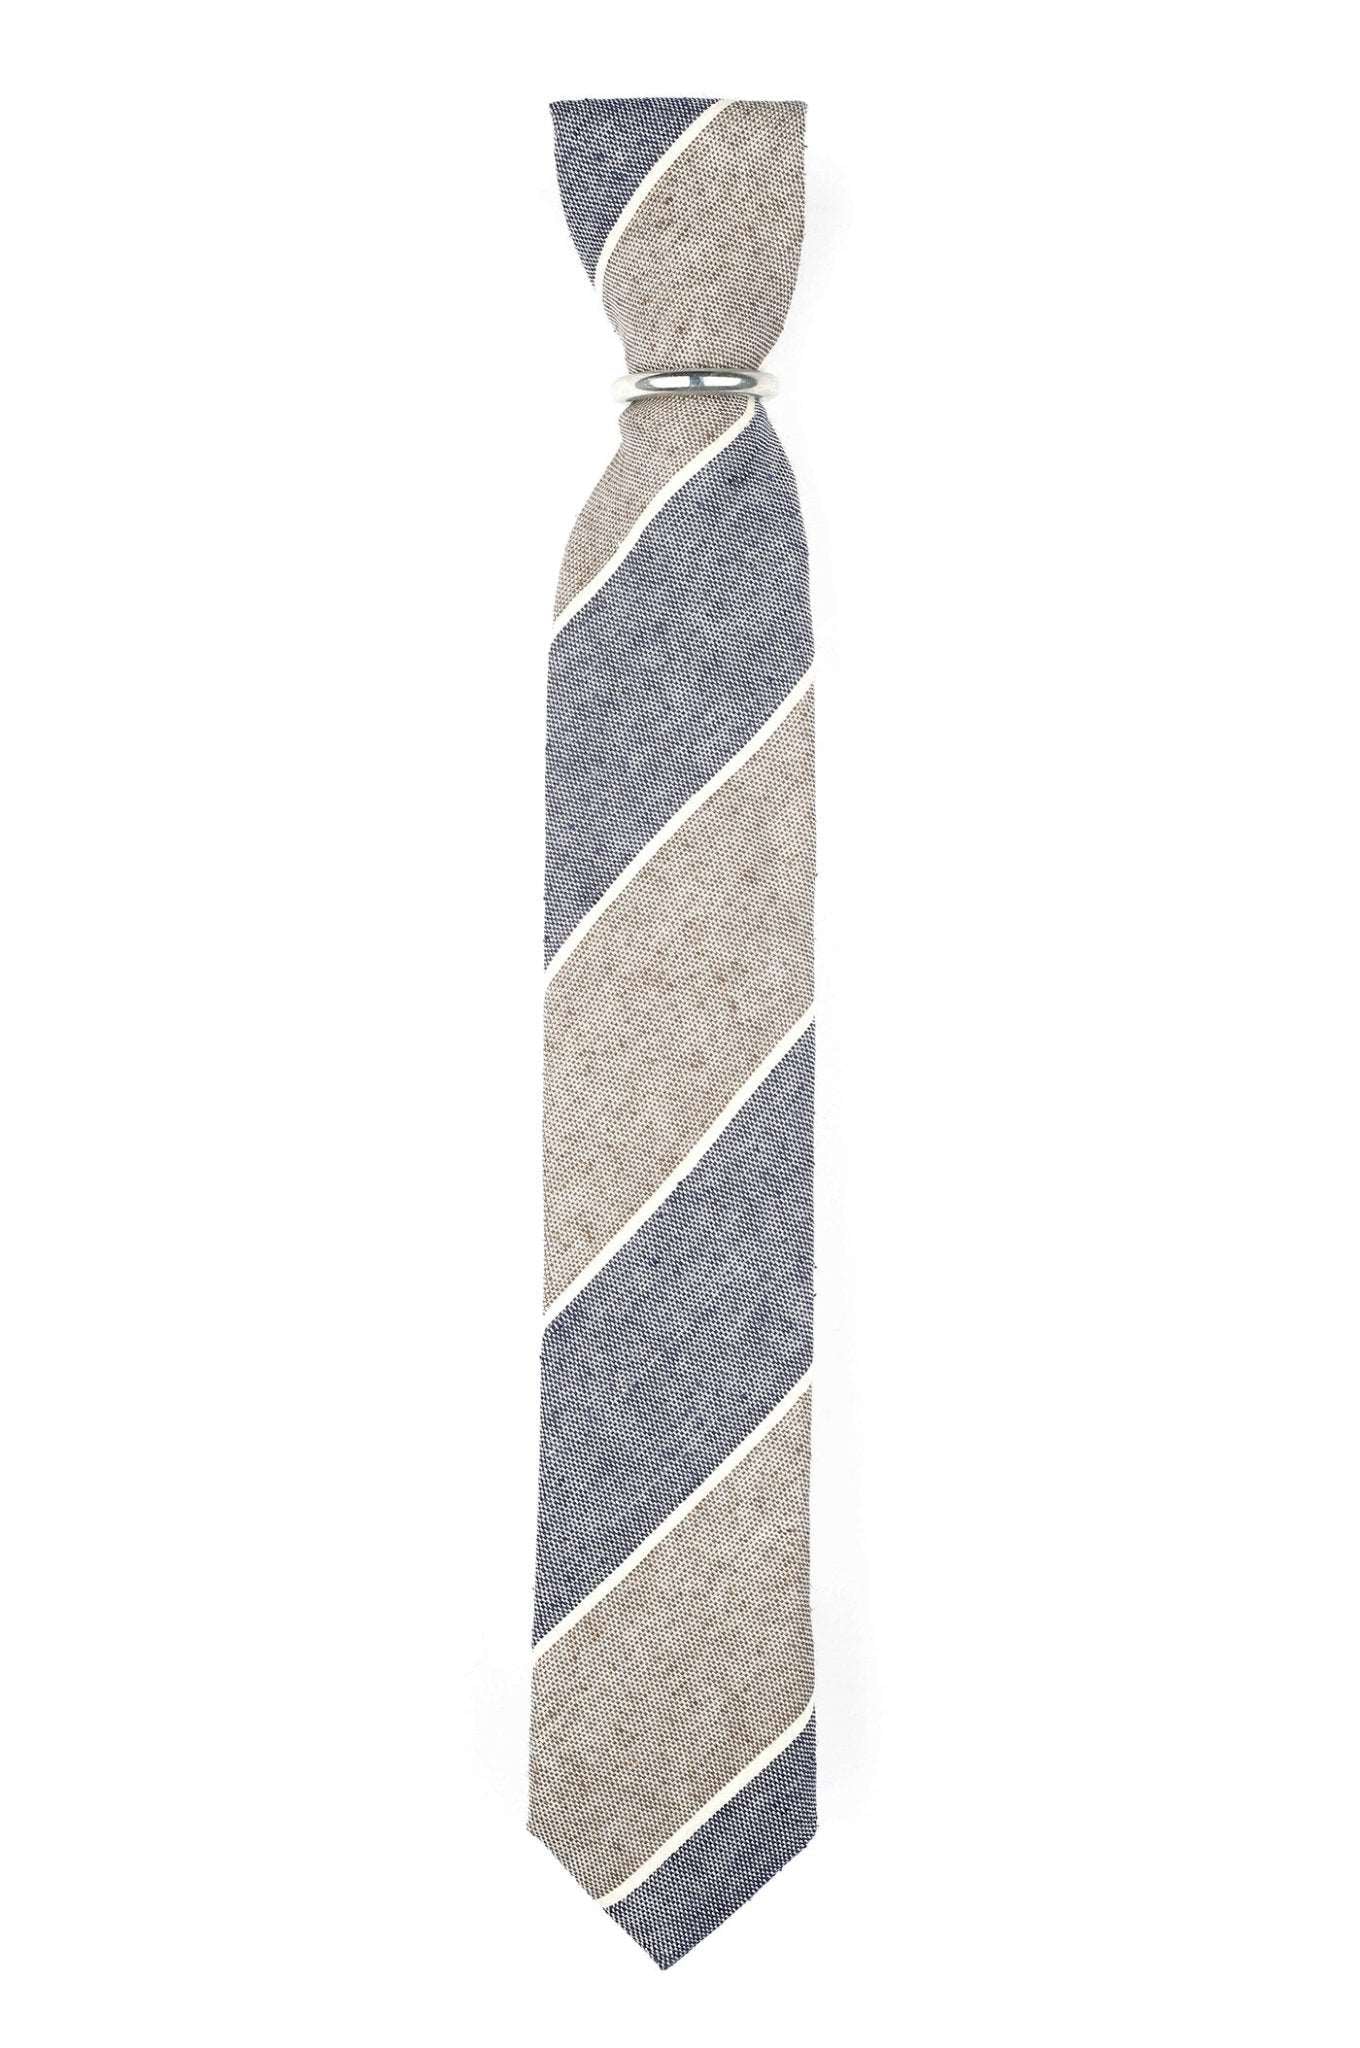 Schmale Krawatte mit Blpckstreifen - REAL GUYS